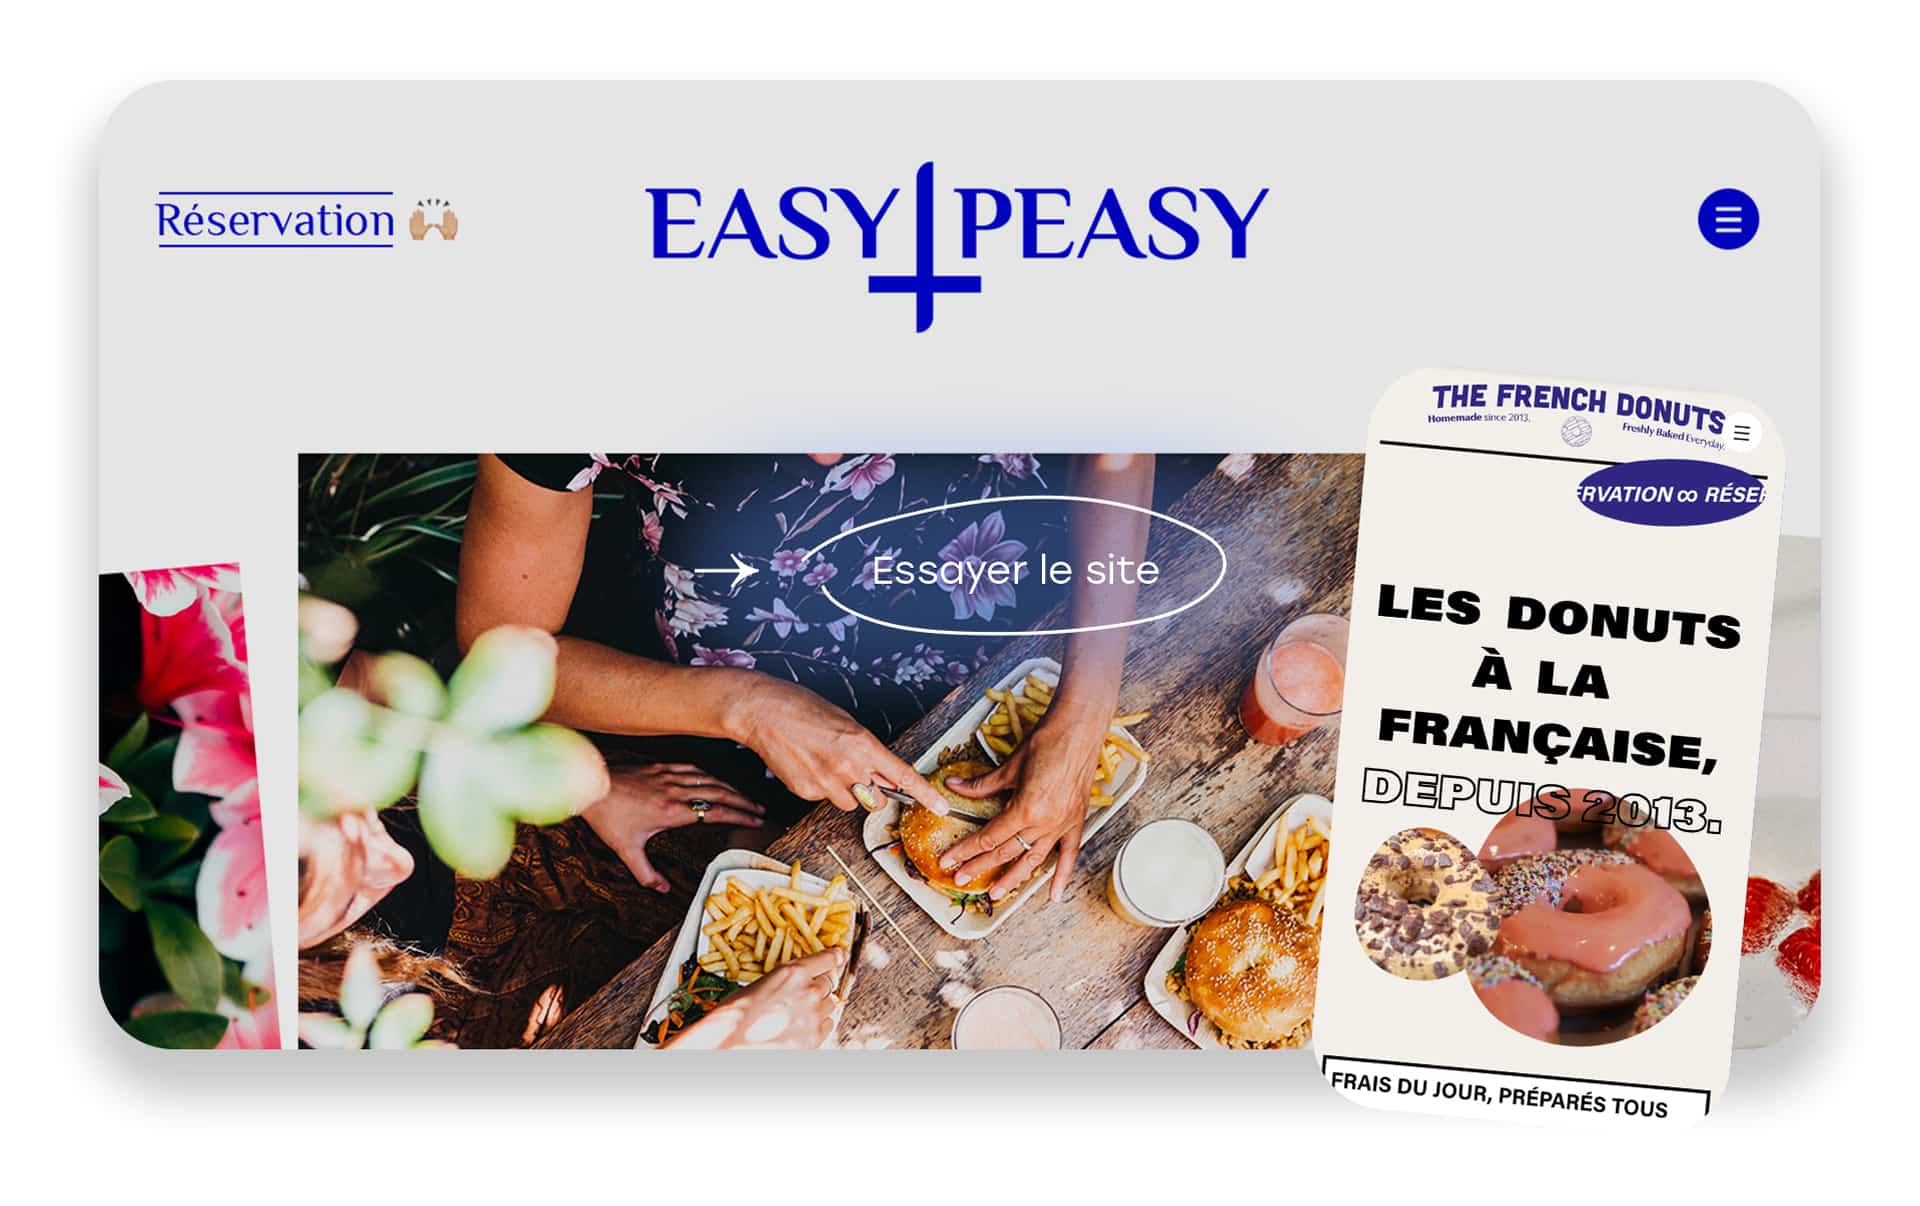 easy peasy - Phantasme : Site internet de luxe pour un budget limité